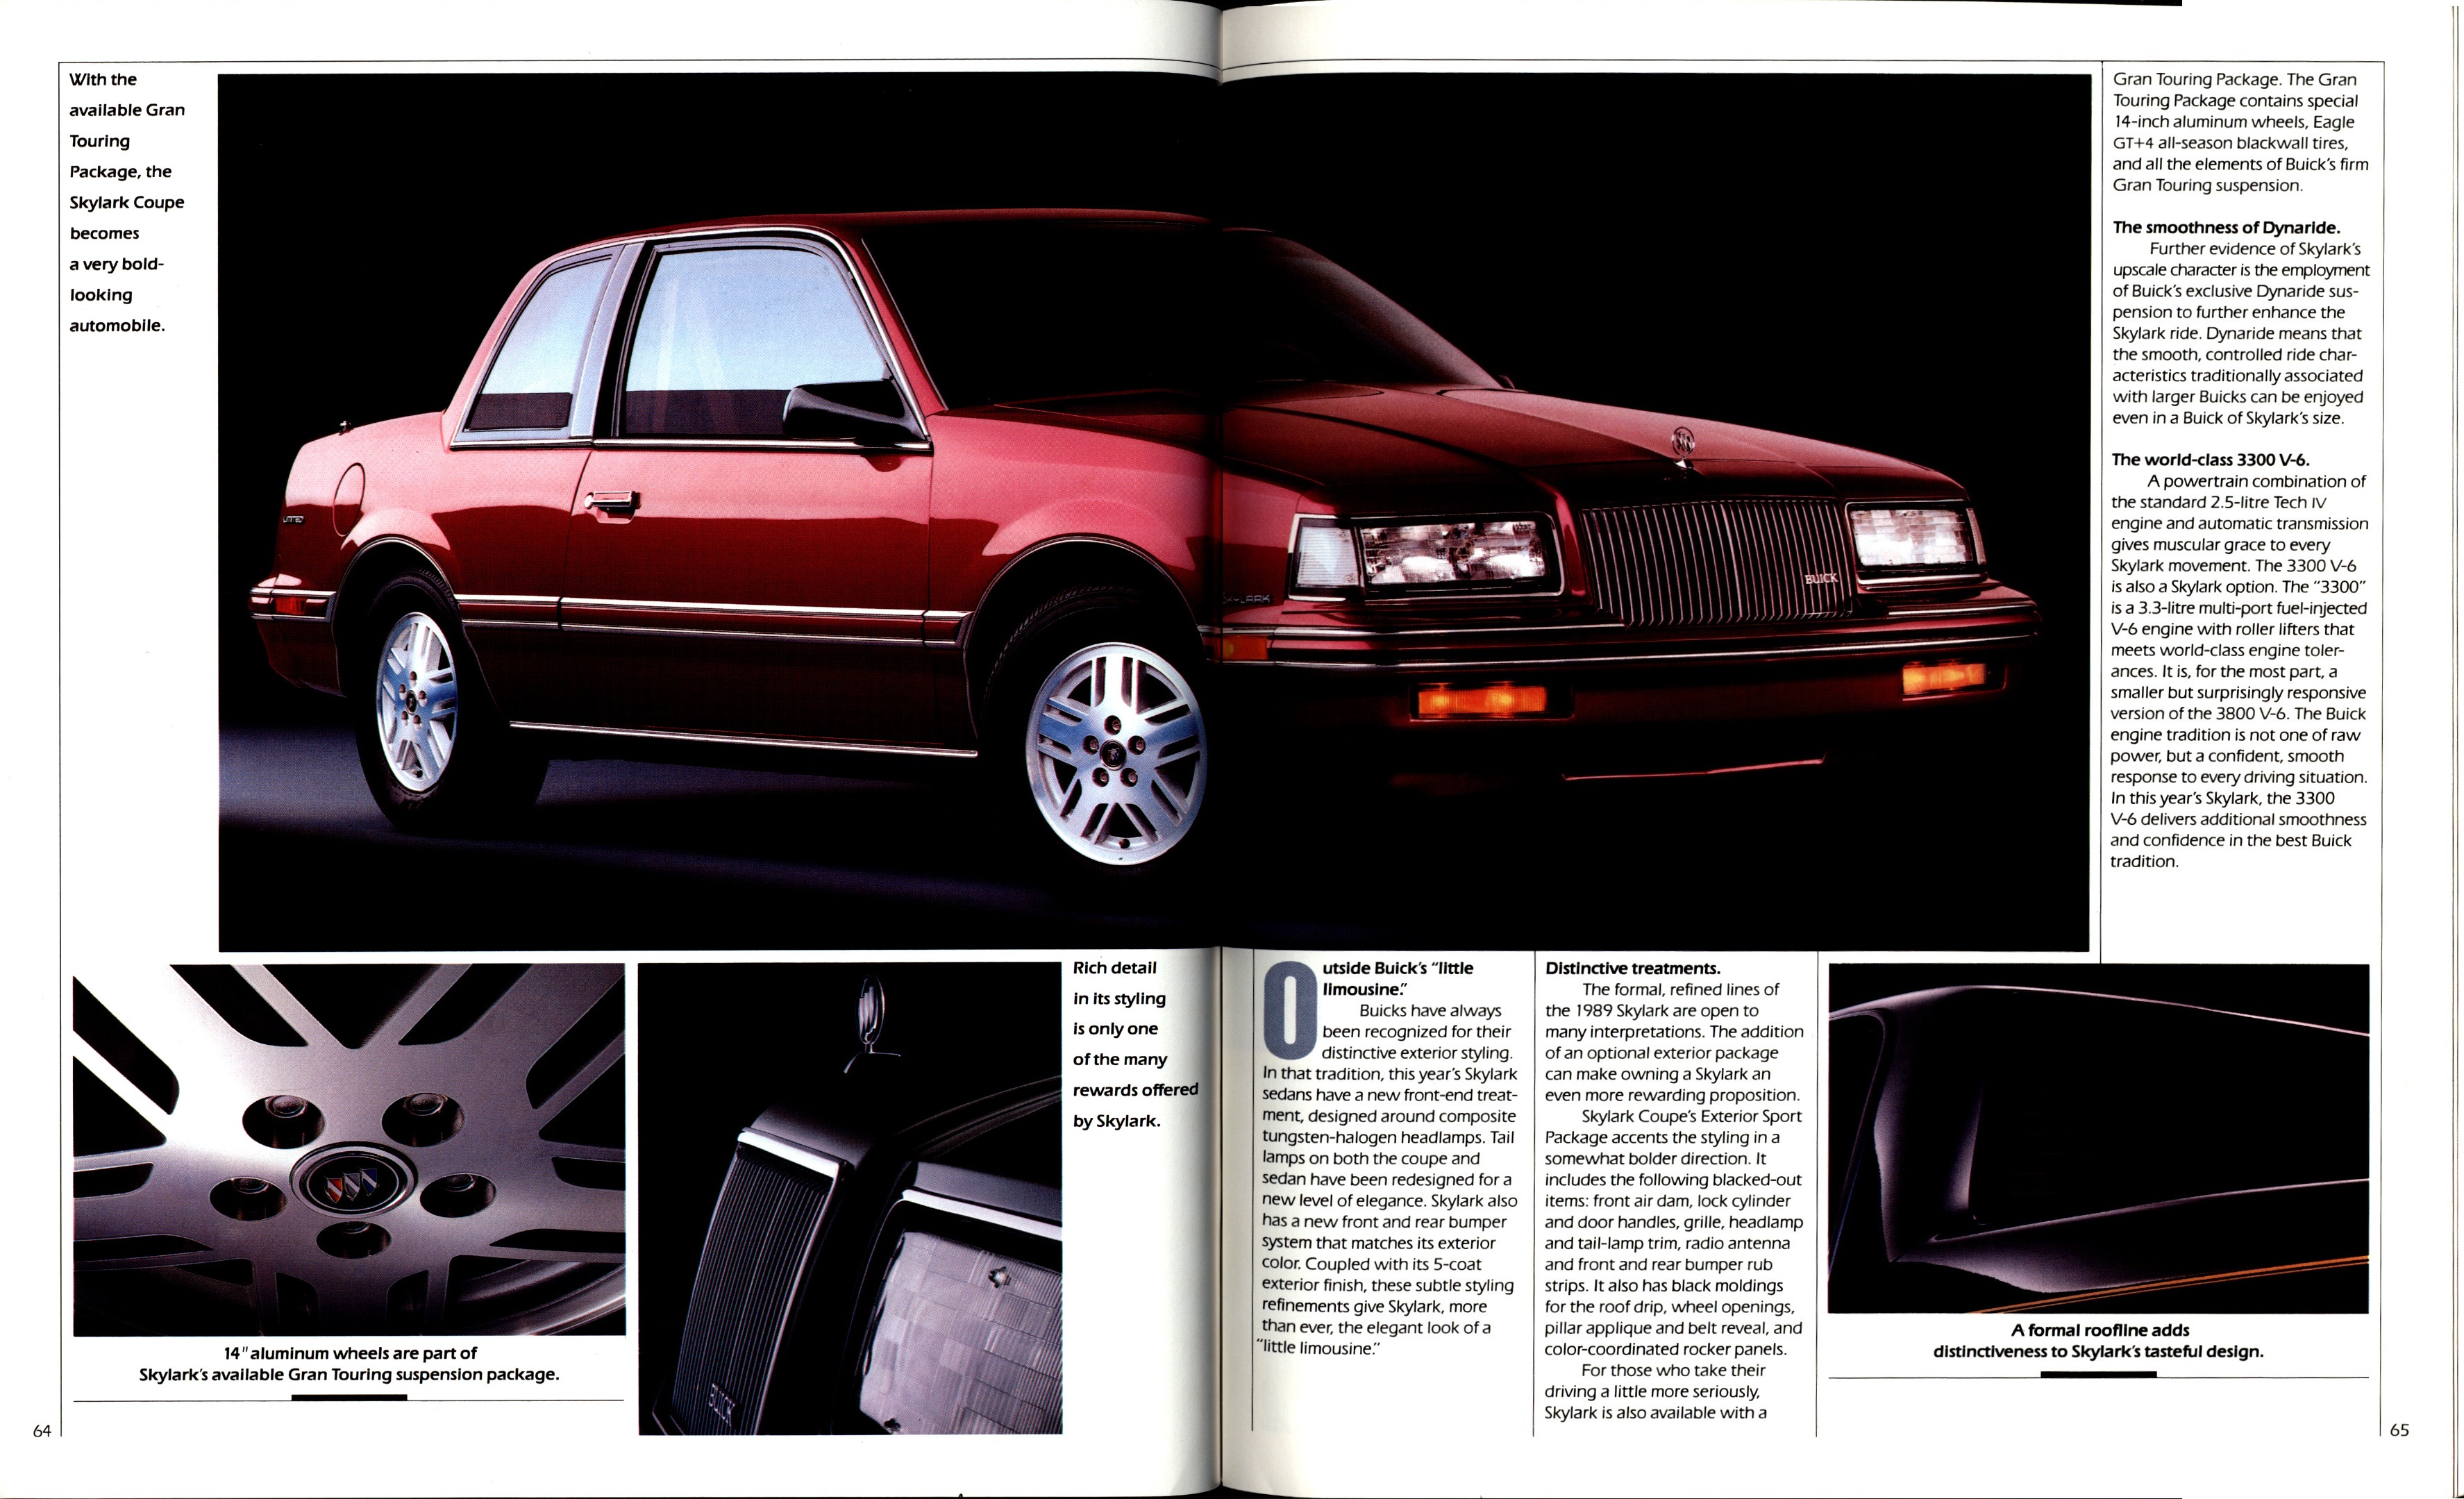 1989 Buick Full Line Prestige-64-65